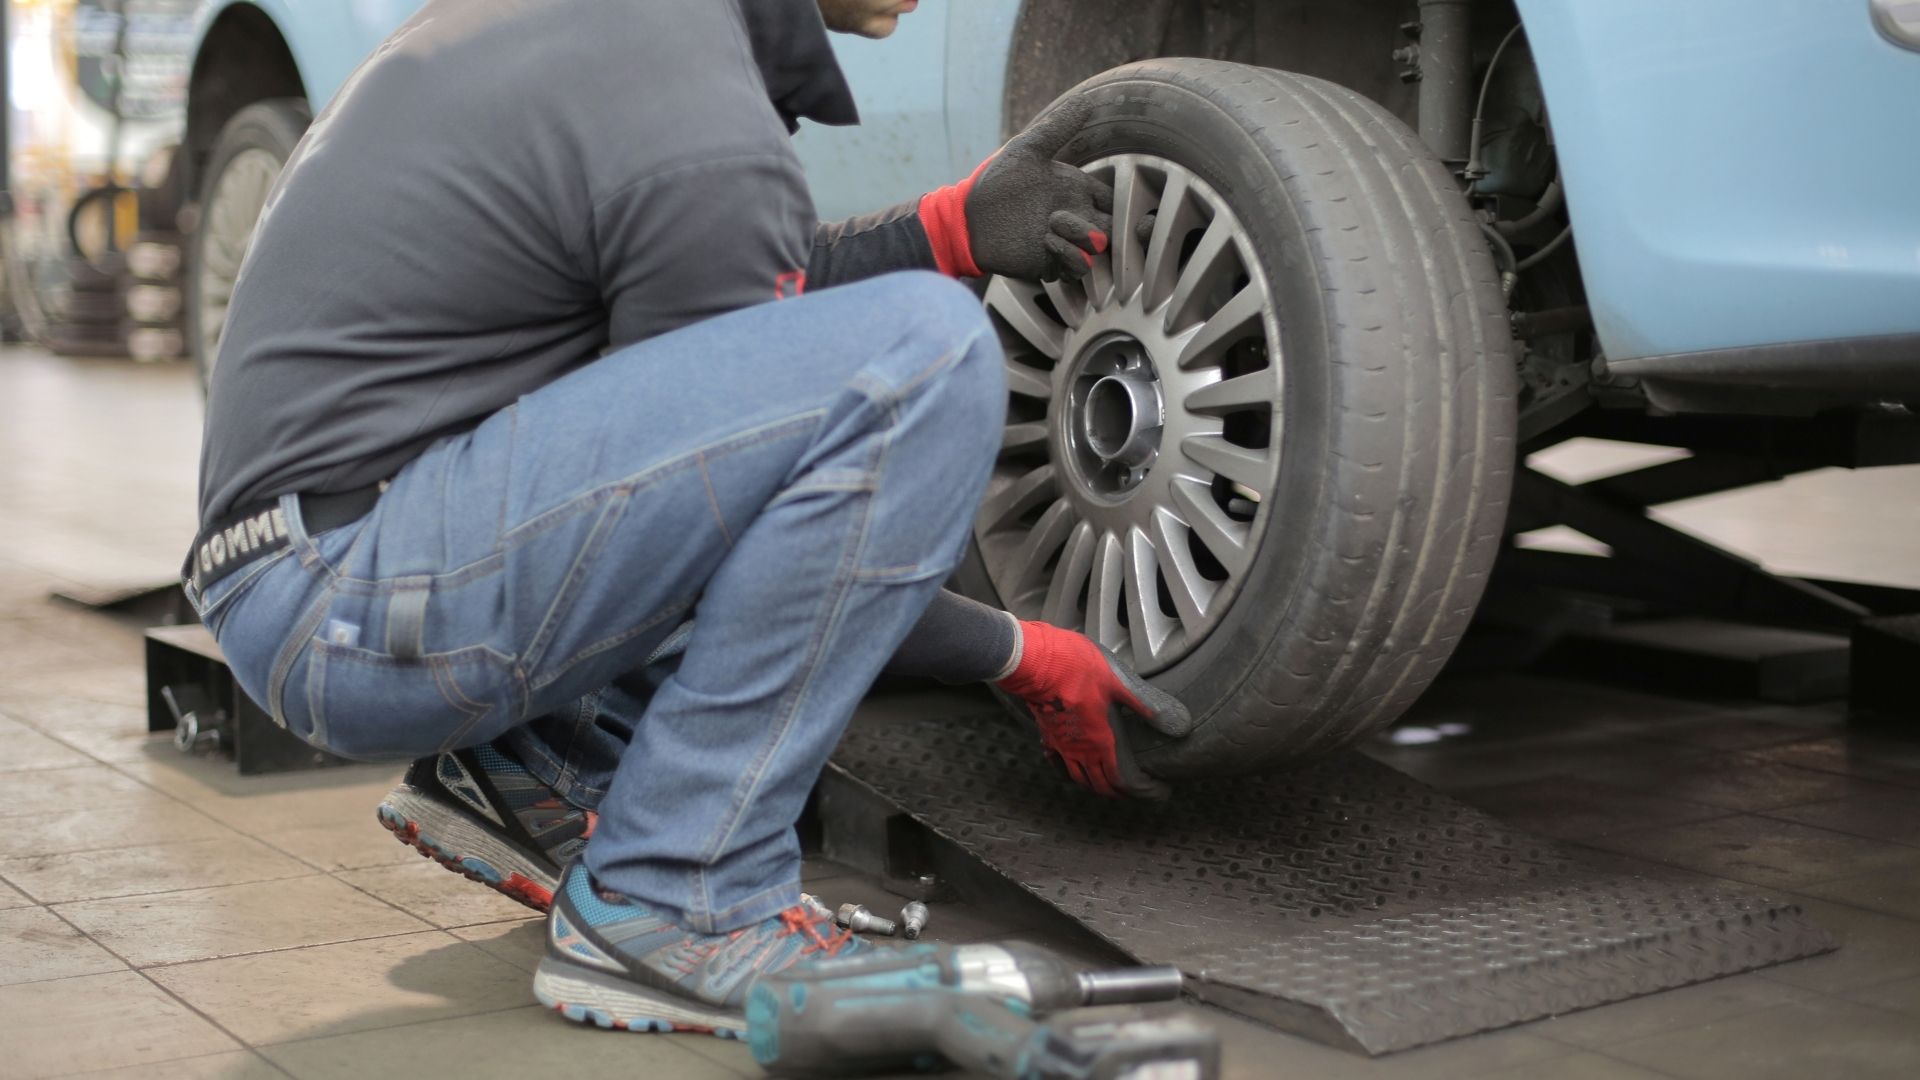 Mecânico fazendo a troca de um pneu careca, mostrando o motivo de fazer a manutenção do veículo.